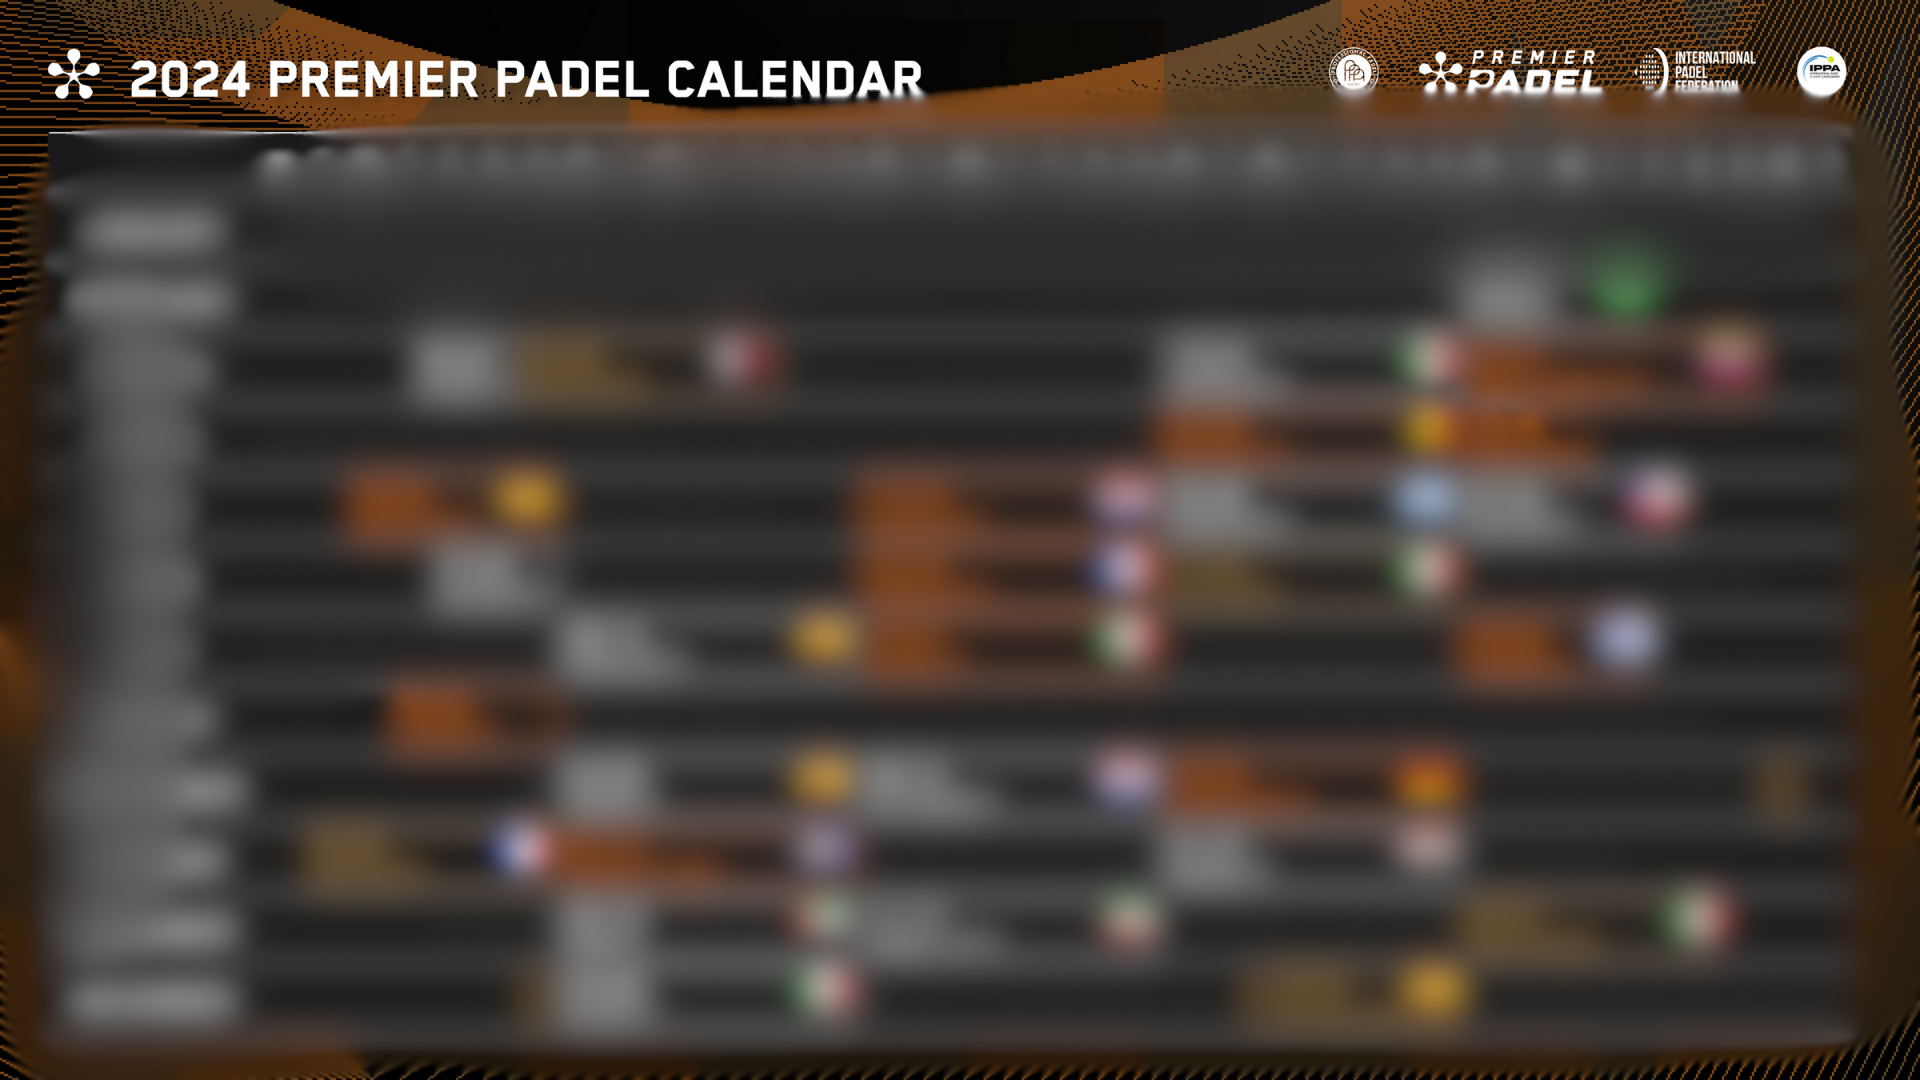 Premier Padel Blurred 2024 calendar